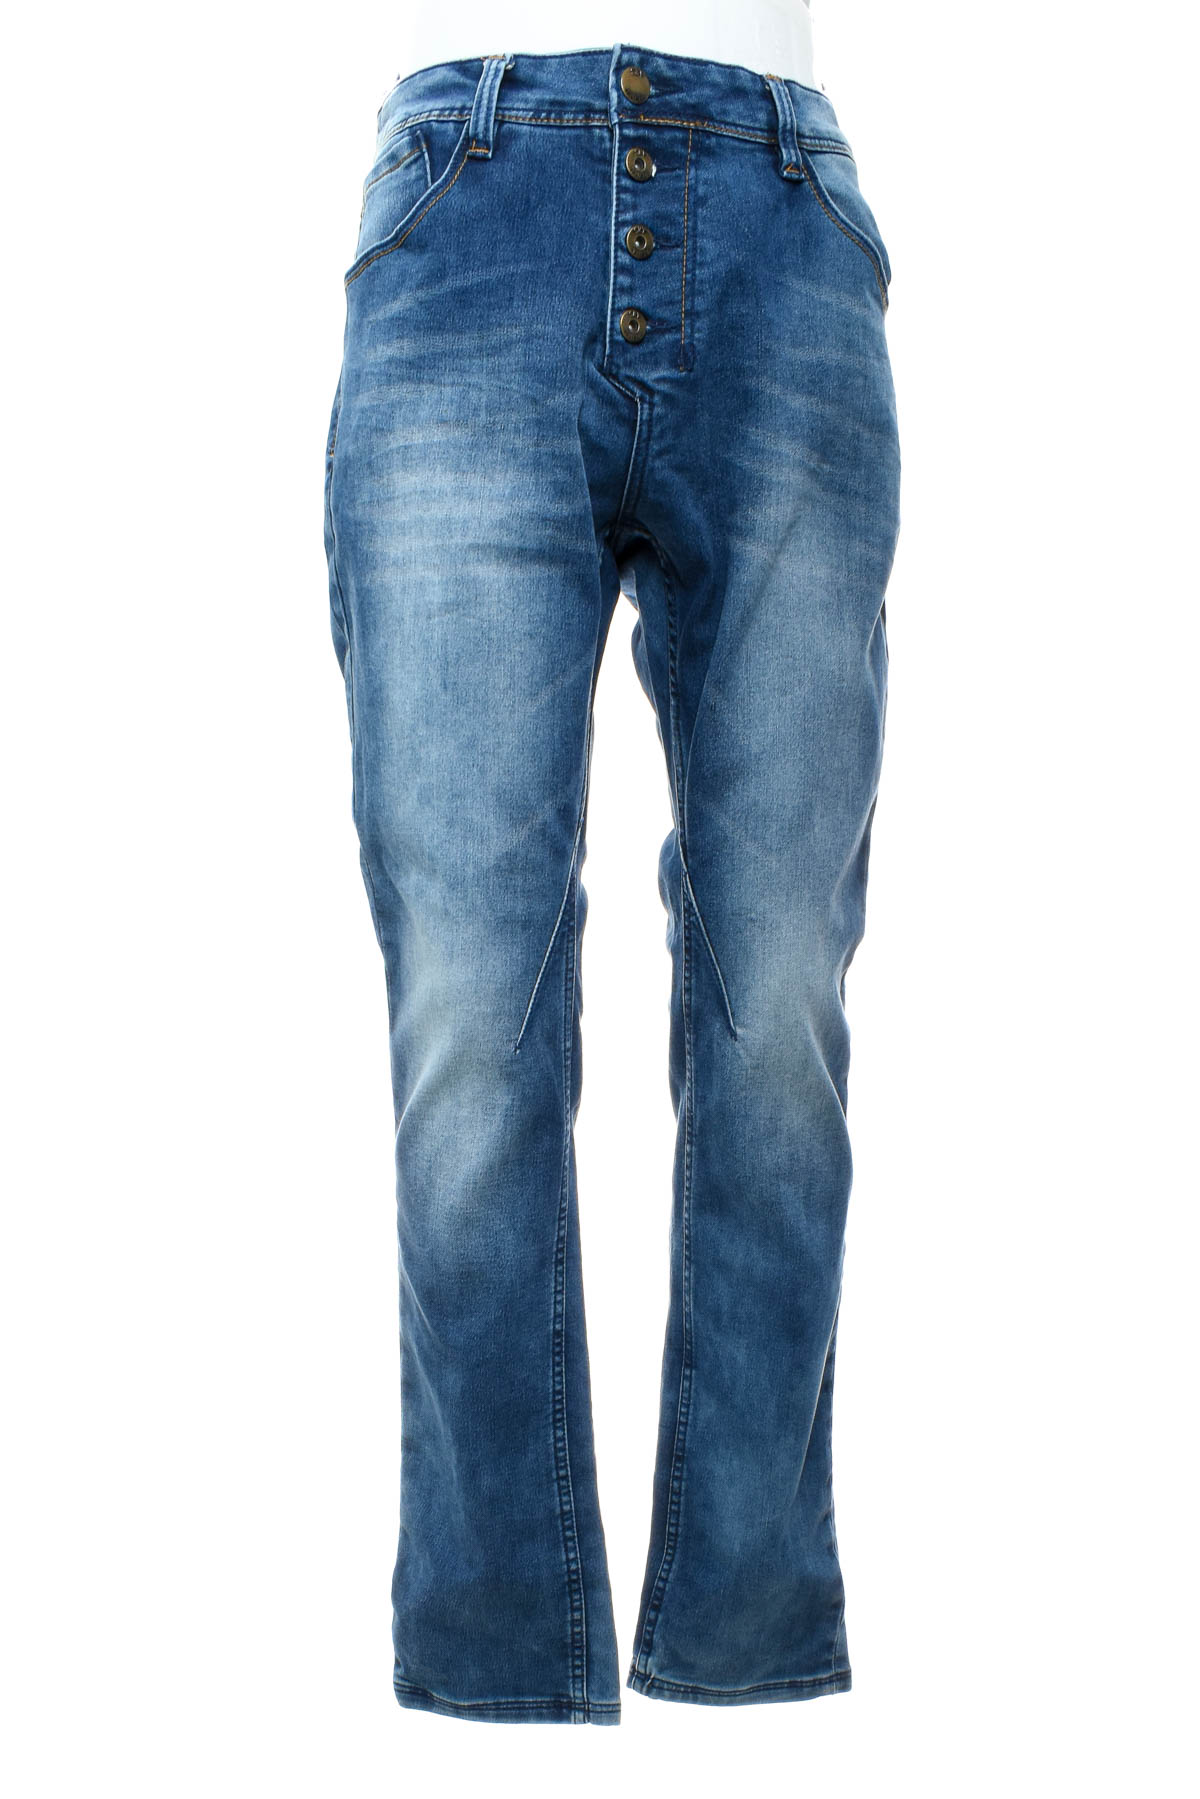 Men's jeans - SKY REBEL - 0